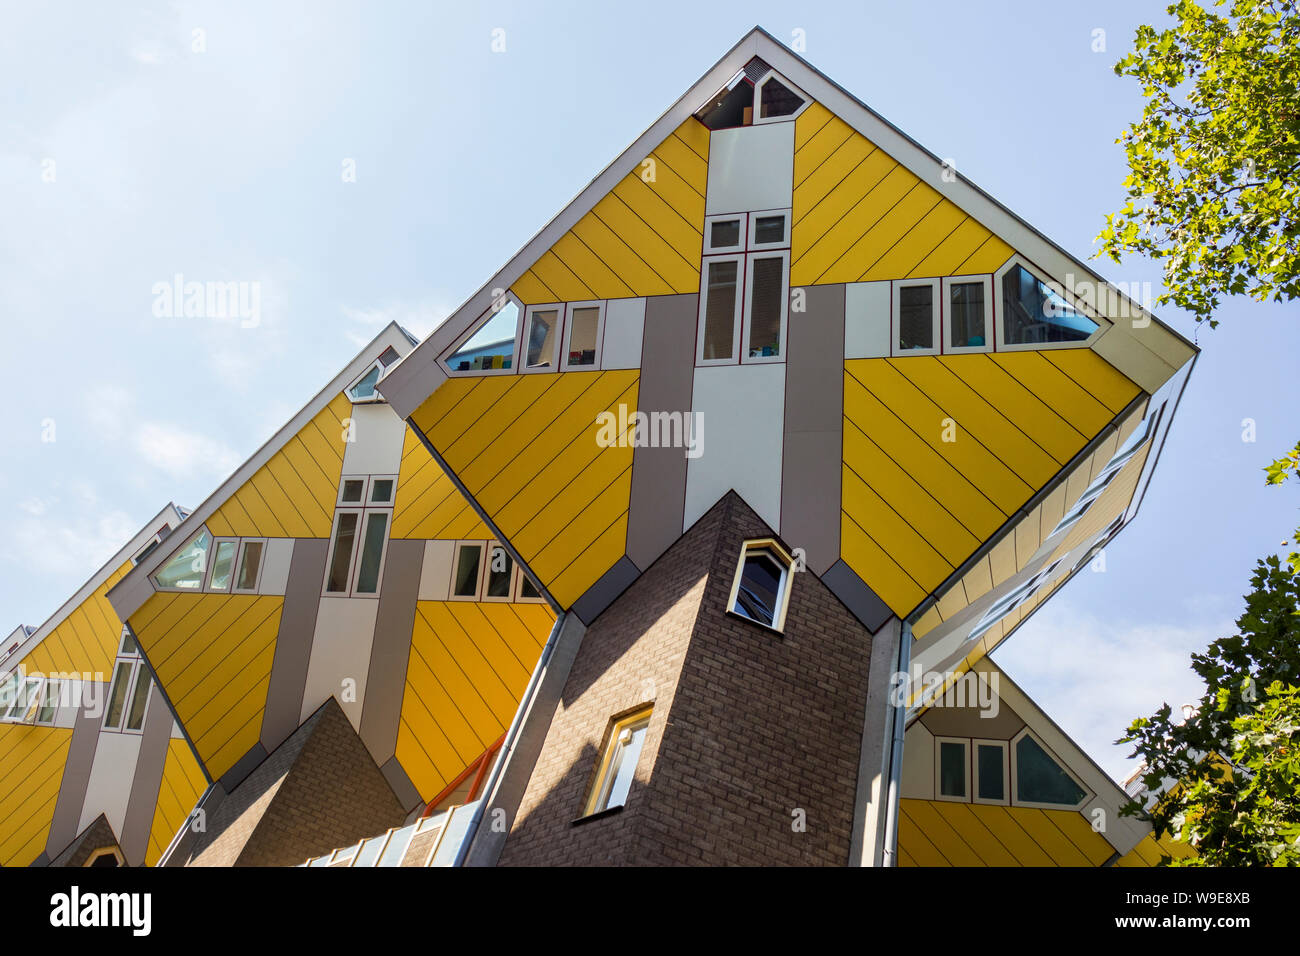 Rotterdam, Holanda - Julio 30, 2019: innovadoras casas Cubo en Rotterdam, diseñado por el arquitecto Piet Blom Foto de stock